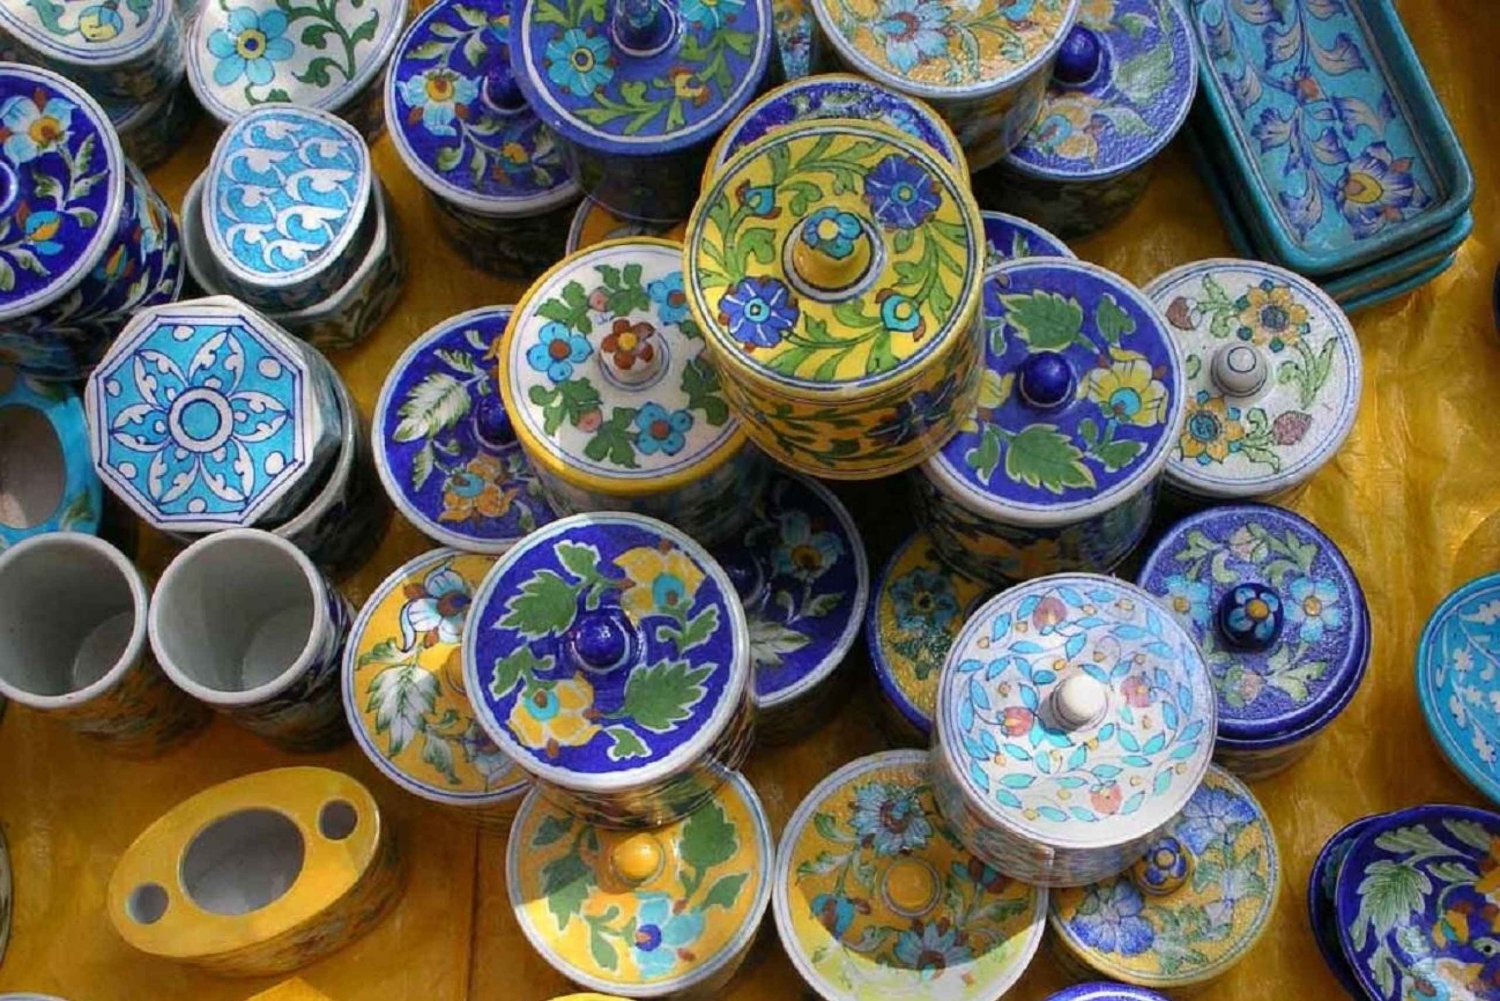 Endagstur till konstverkstad för blå keramik